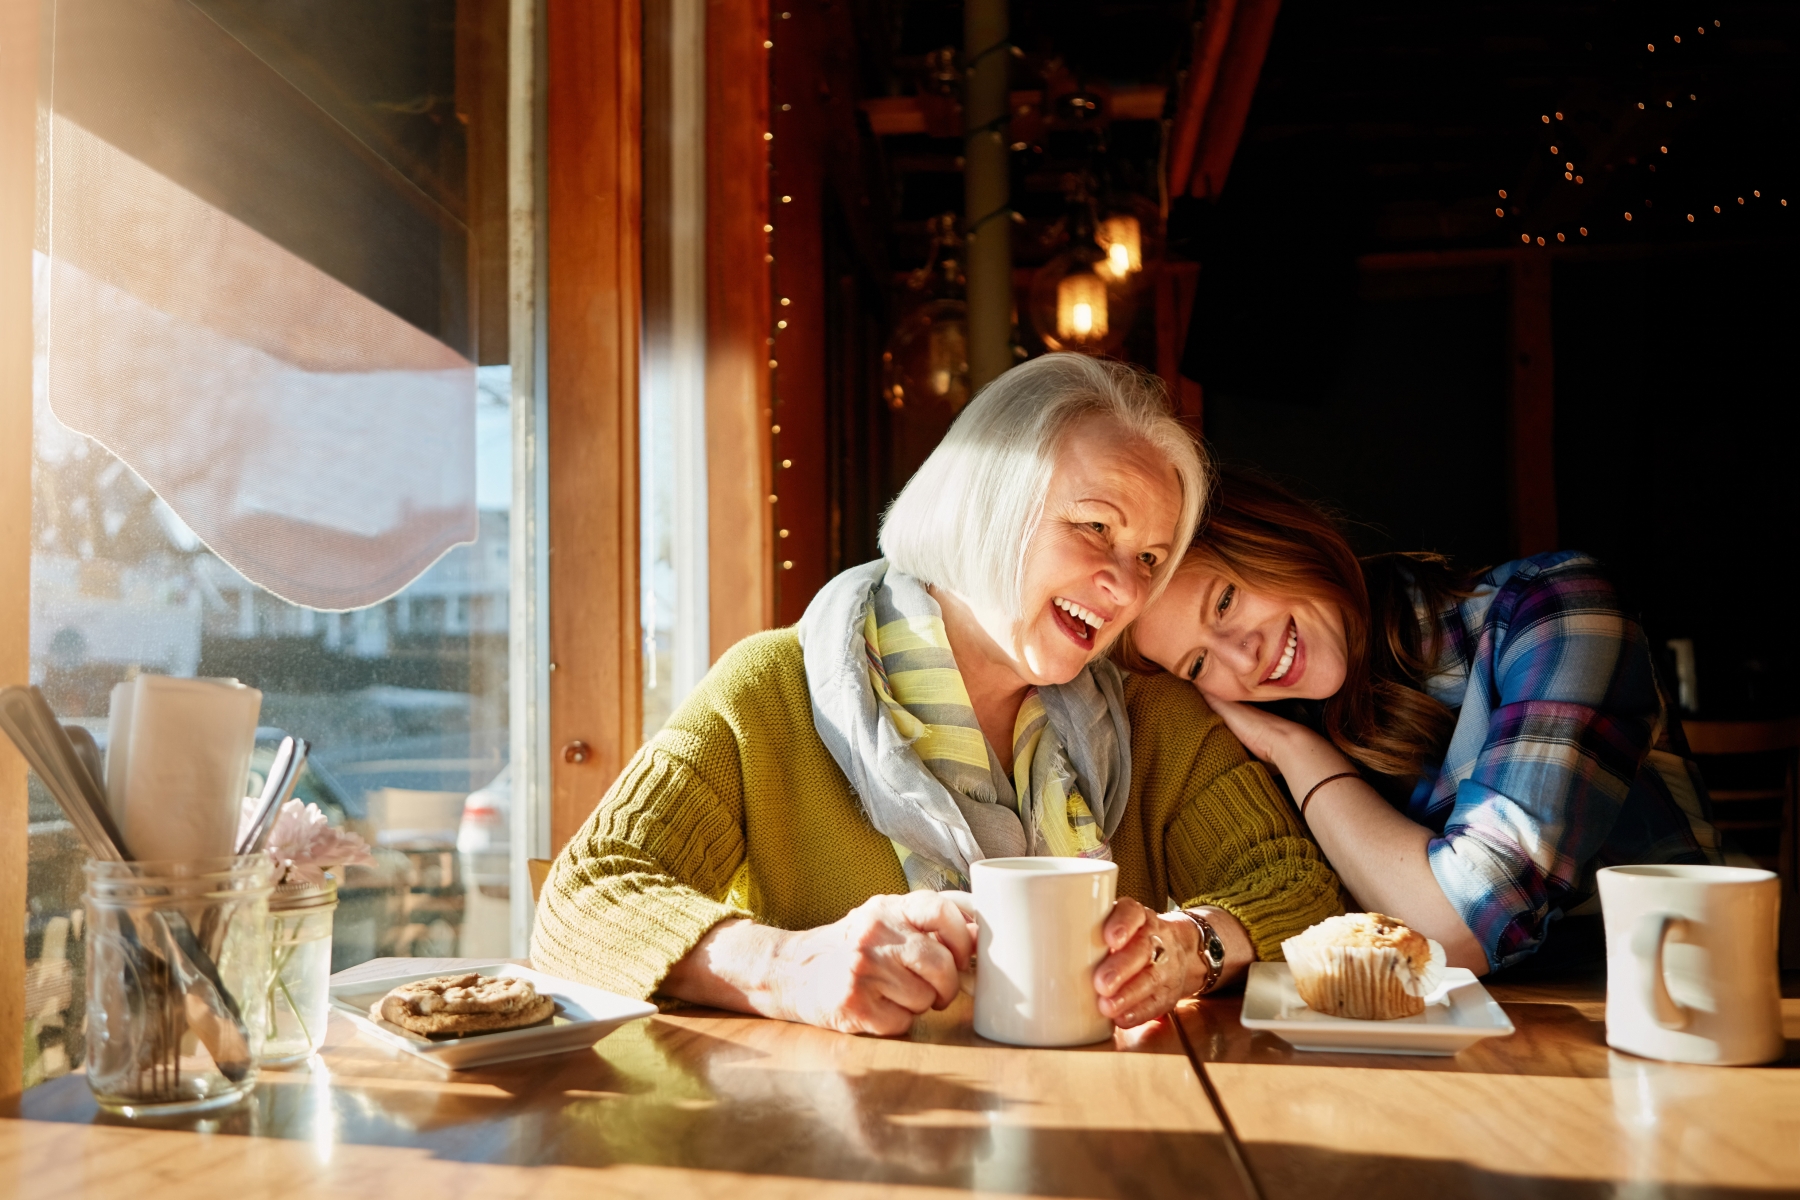 Äldre kvinna och yngre kvinna tillsammans vid ett bord där yngre kvinna lutar sig mot den äldre.